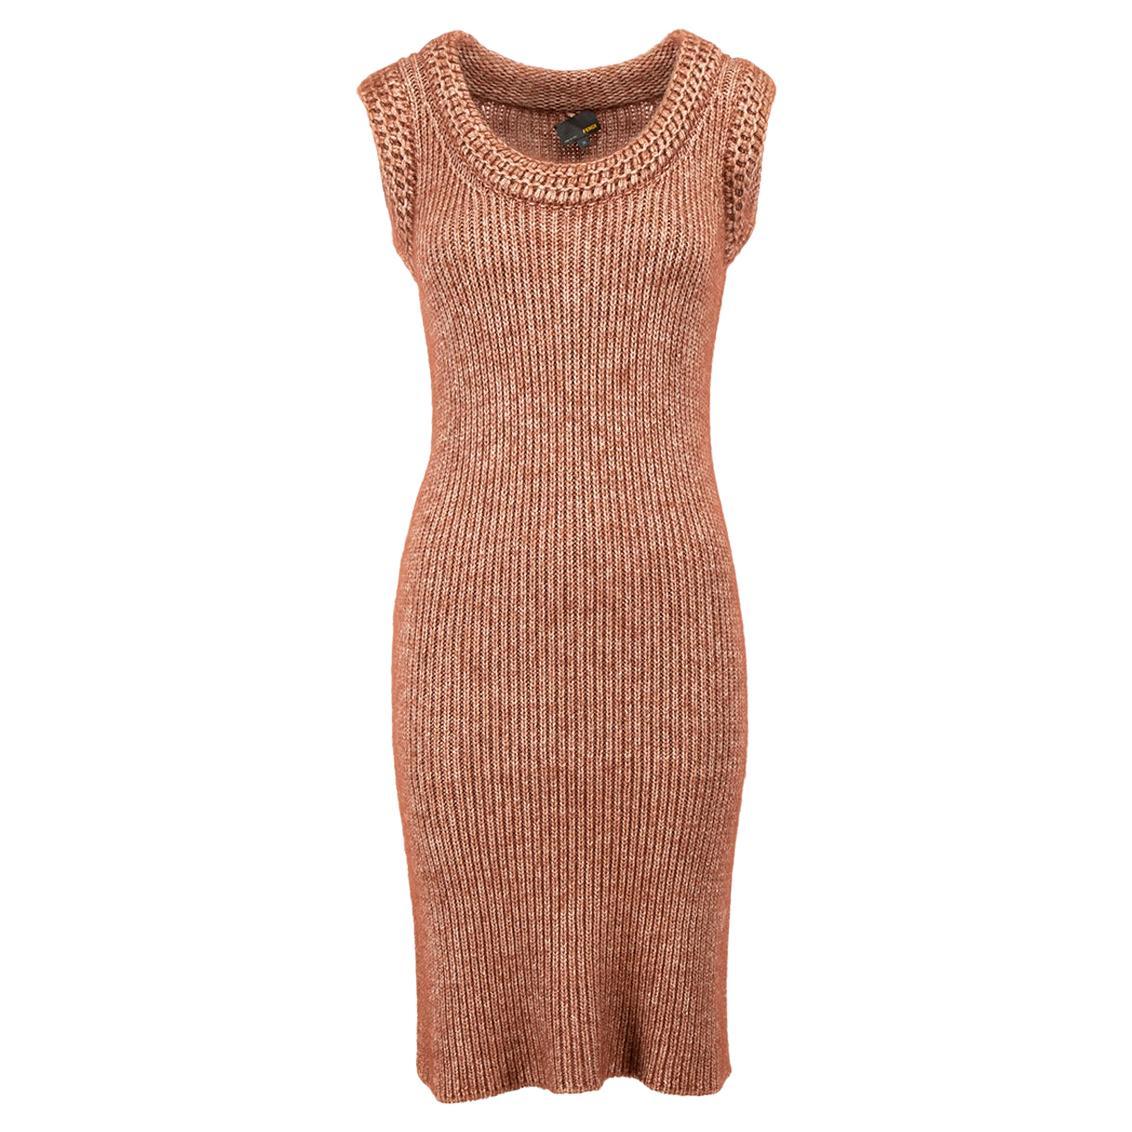 Brown Mohair-Blend Knit Sleeveless Dress Size XS